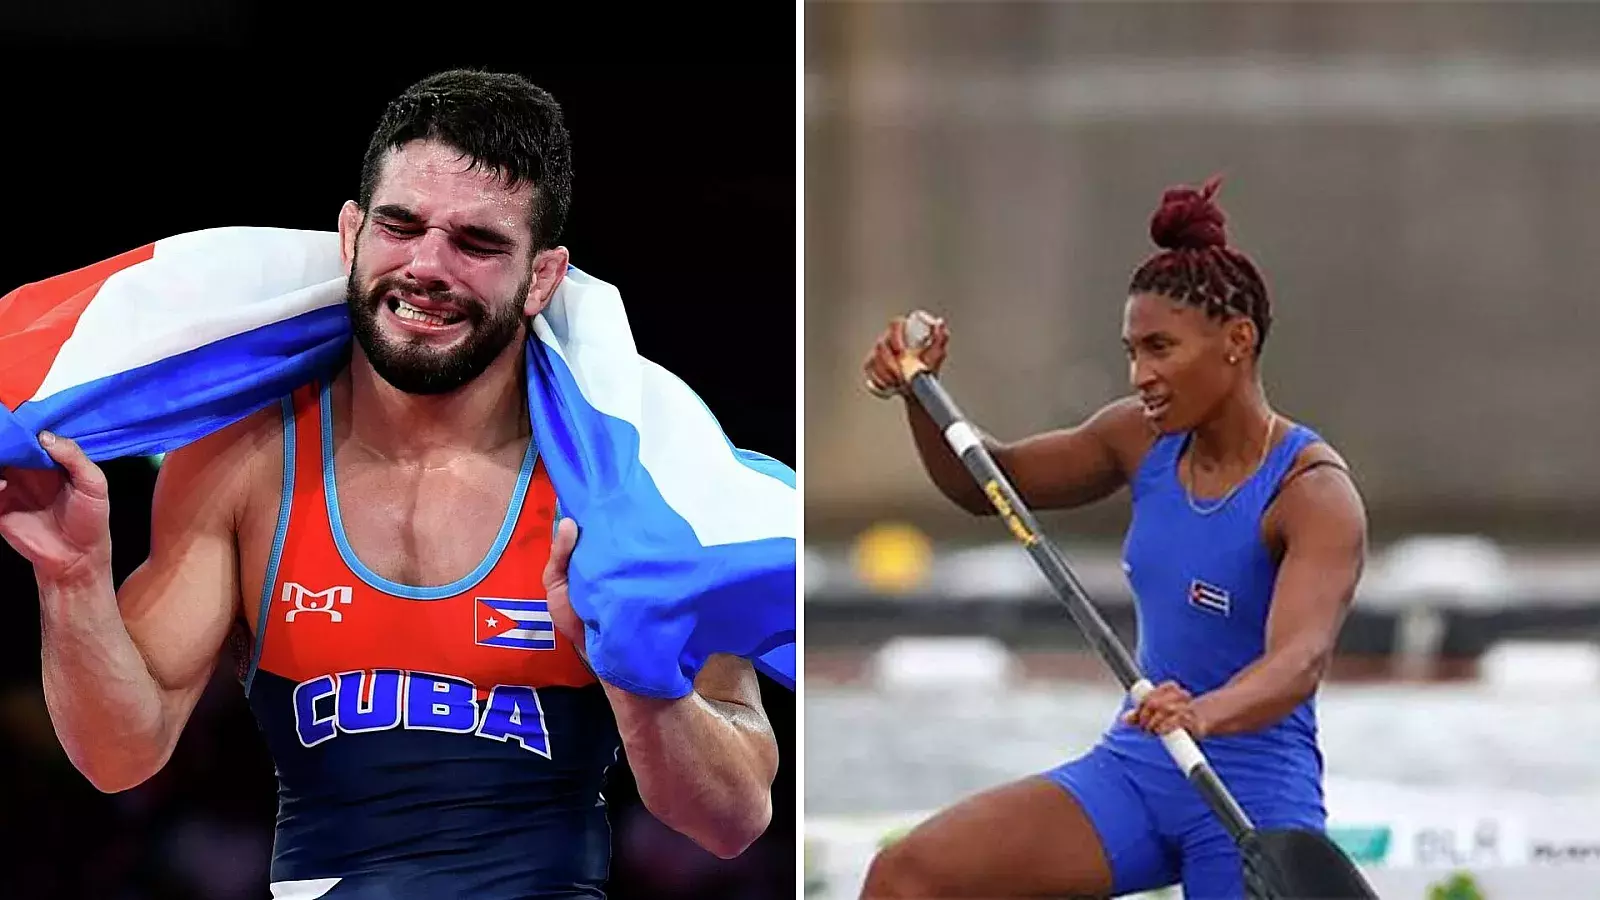 Orta y Cirilo, atletas cubanos